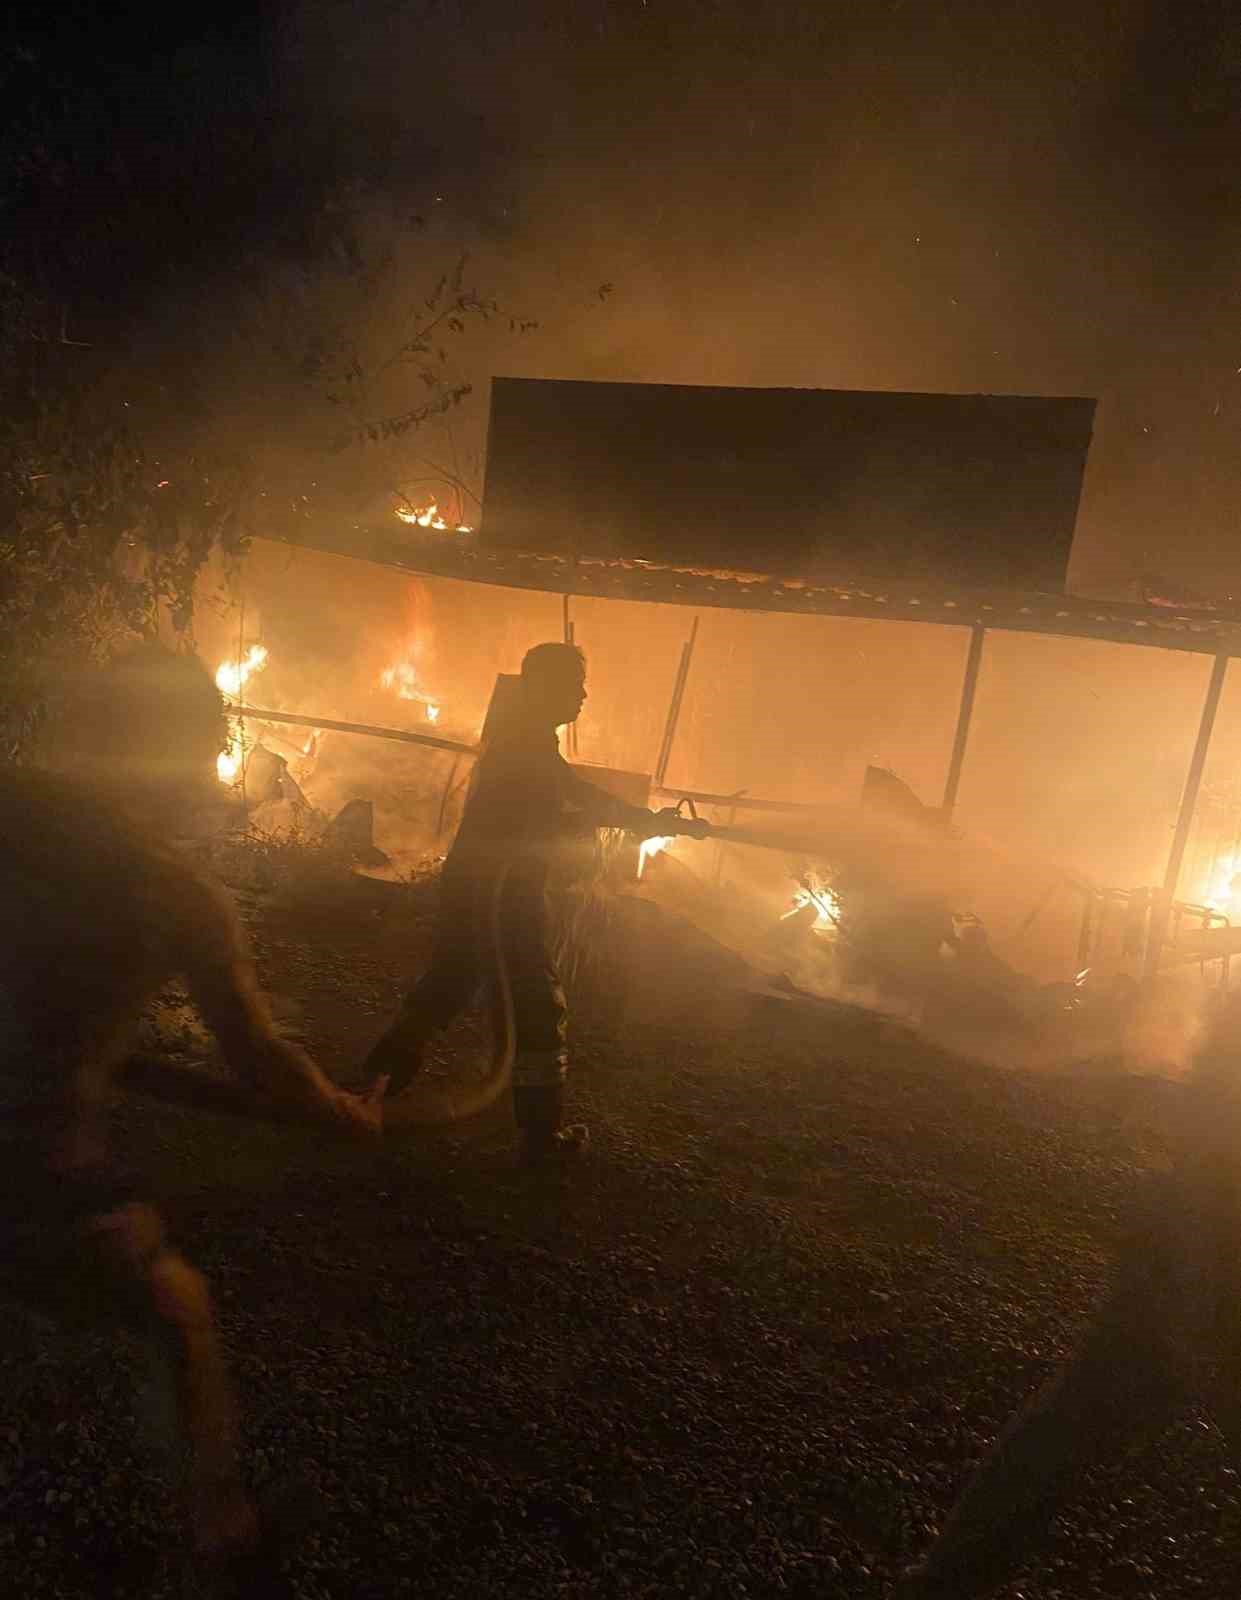 İşyeri içeride bulunan araçlarla birlikte yandı, yangındaki zarar milyarlarla ifade ediliyor